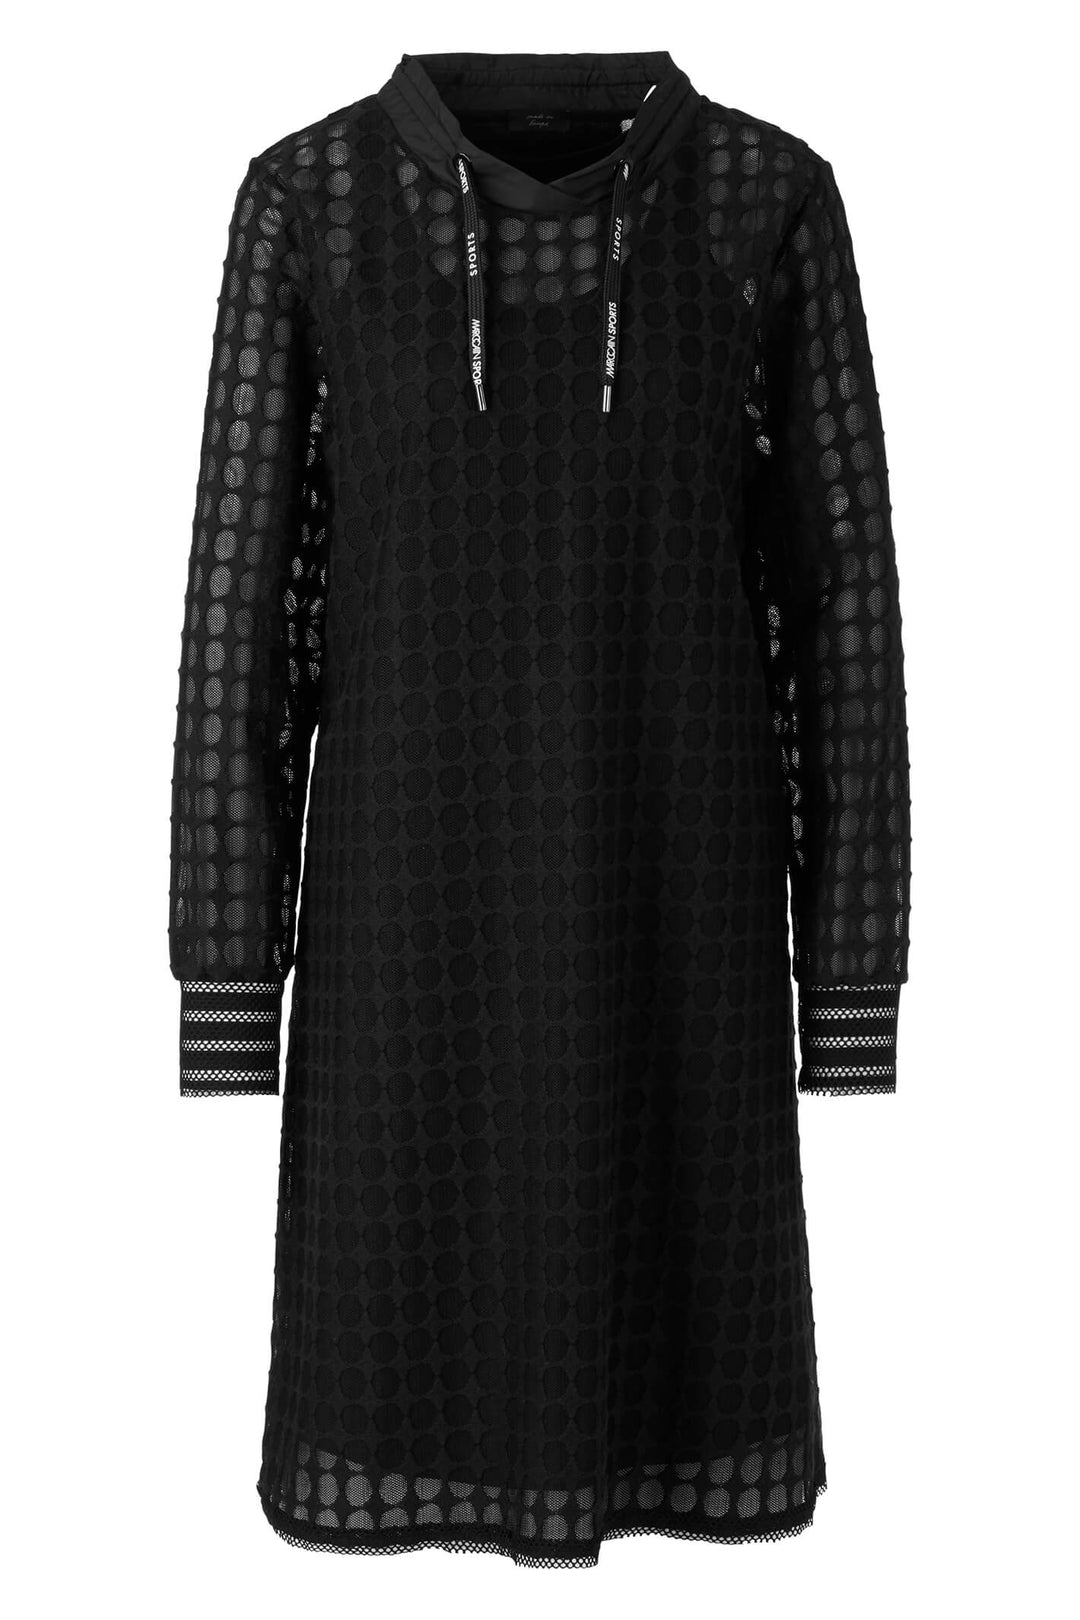 Marc Cain TS 21.43 J49 Black Mesh Spot Jersey Dress - Olivia Grace Fashion